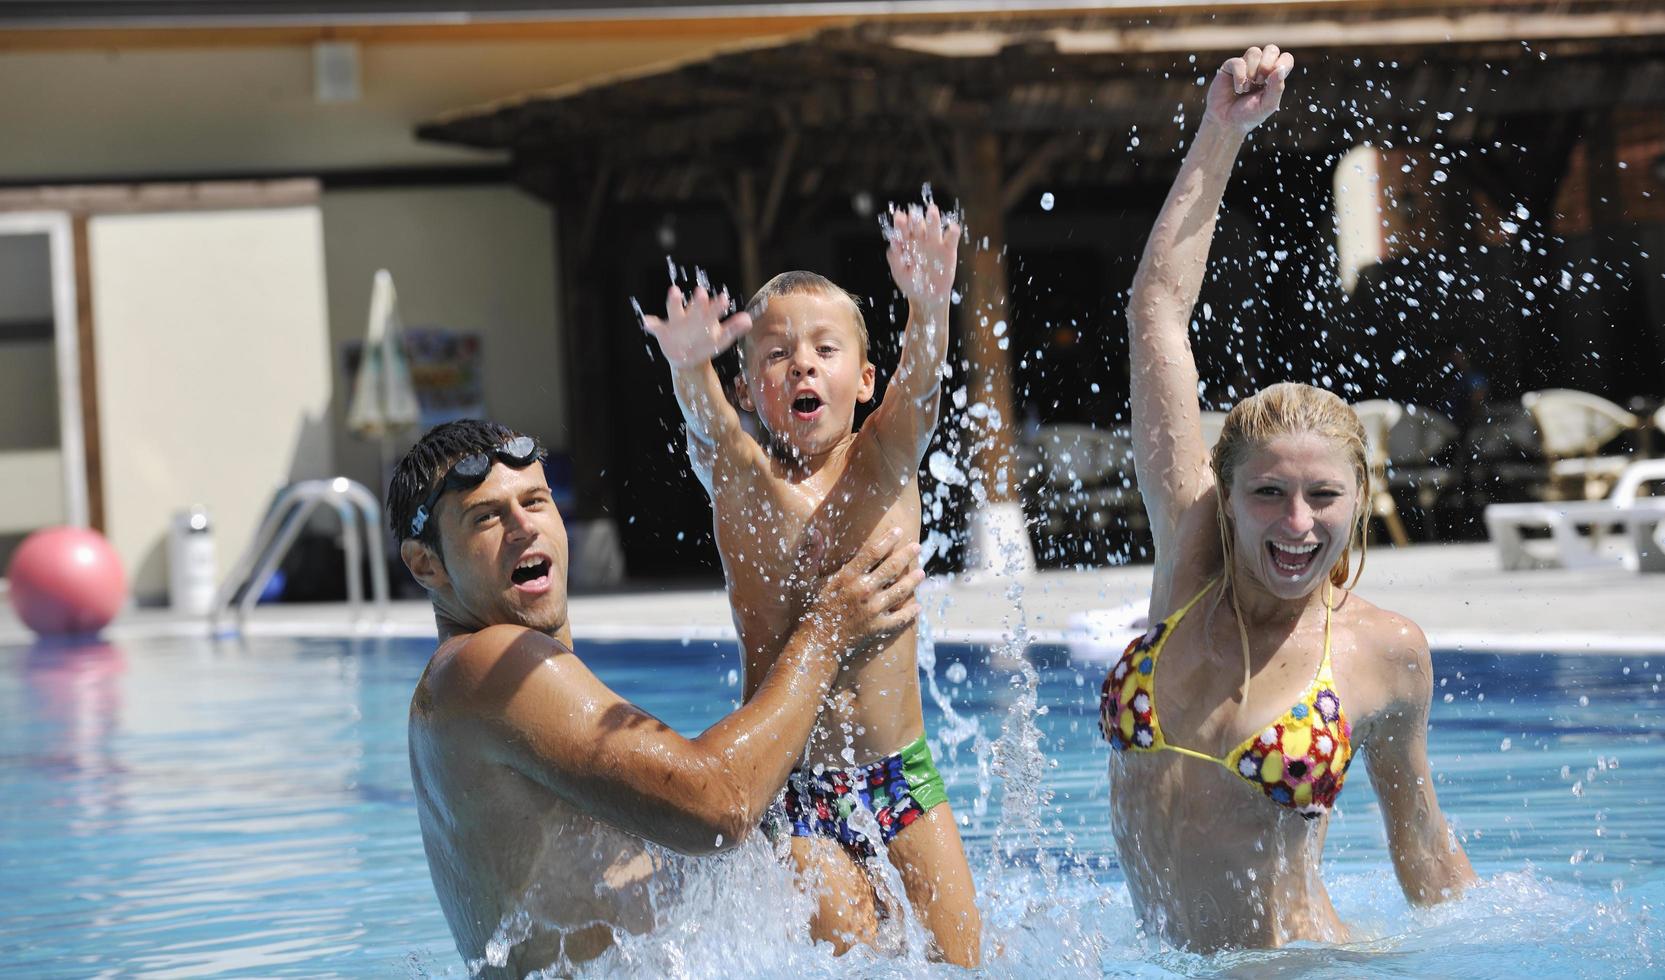 gelukkig jong familie hebben pret Aan zwemmen zwembad foto